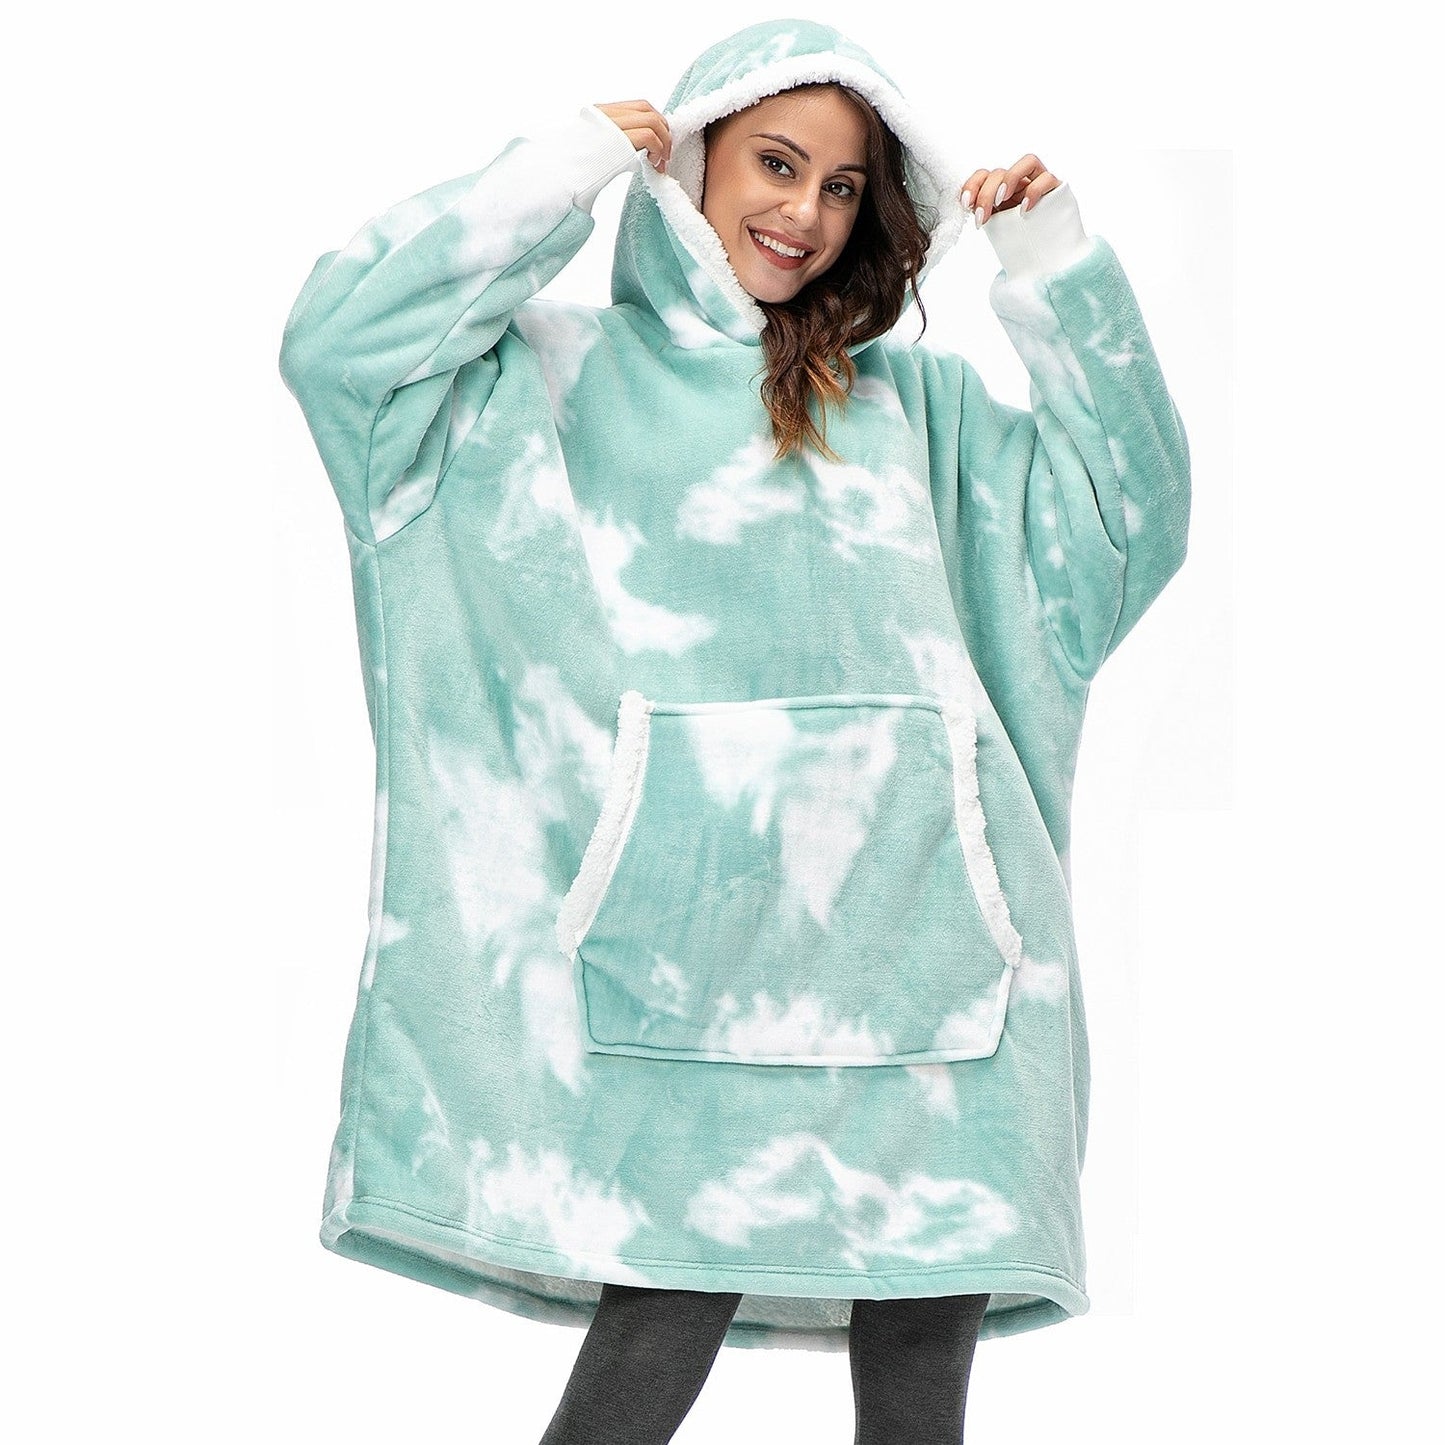 The Hoodie Blanket - Oversized Wearable Blanket – Sooo Cozy